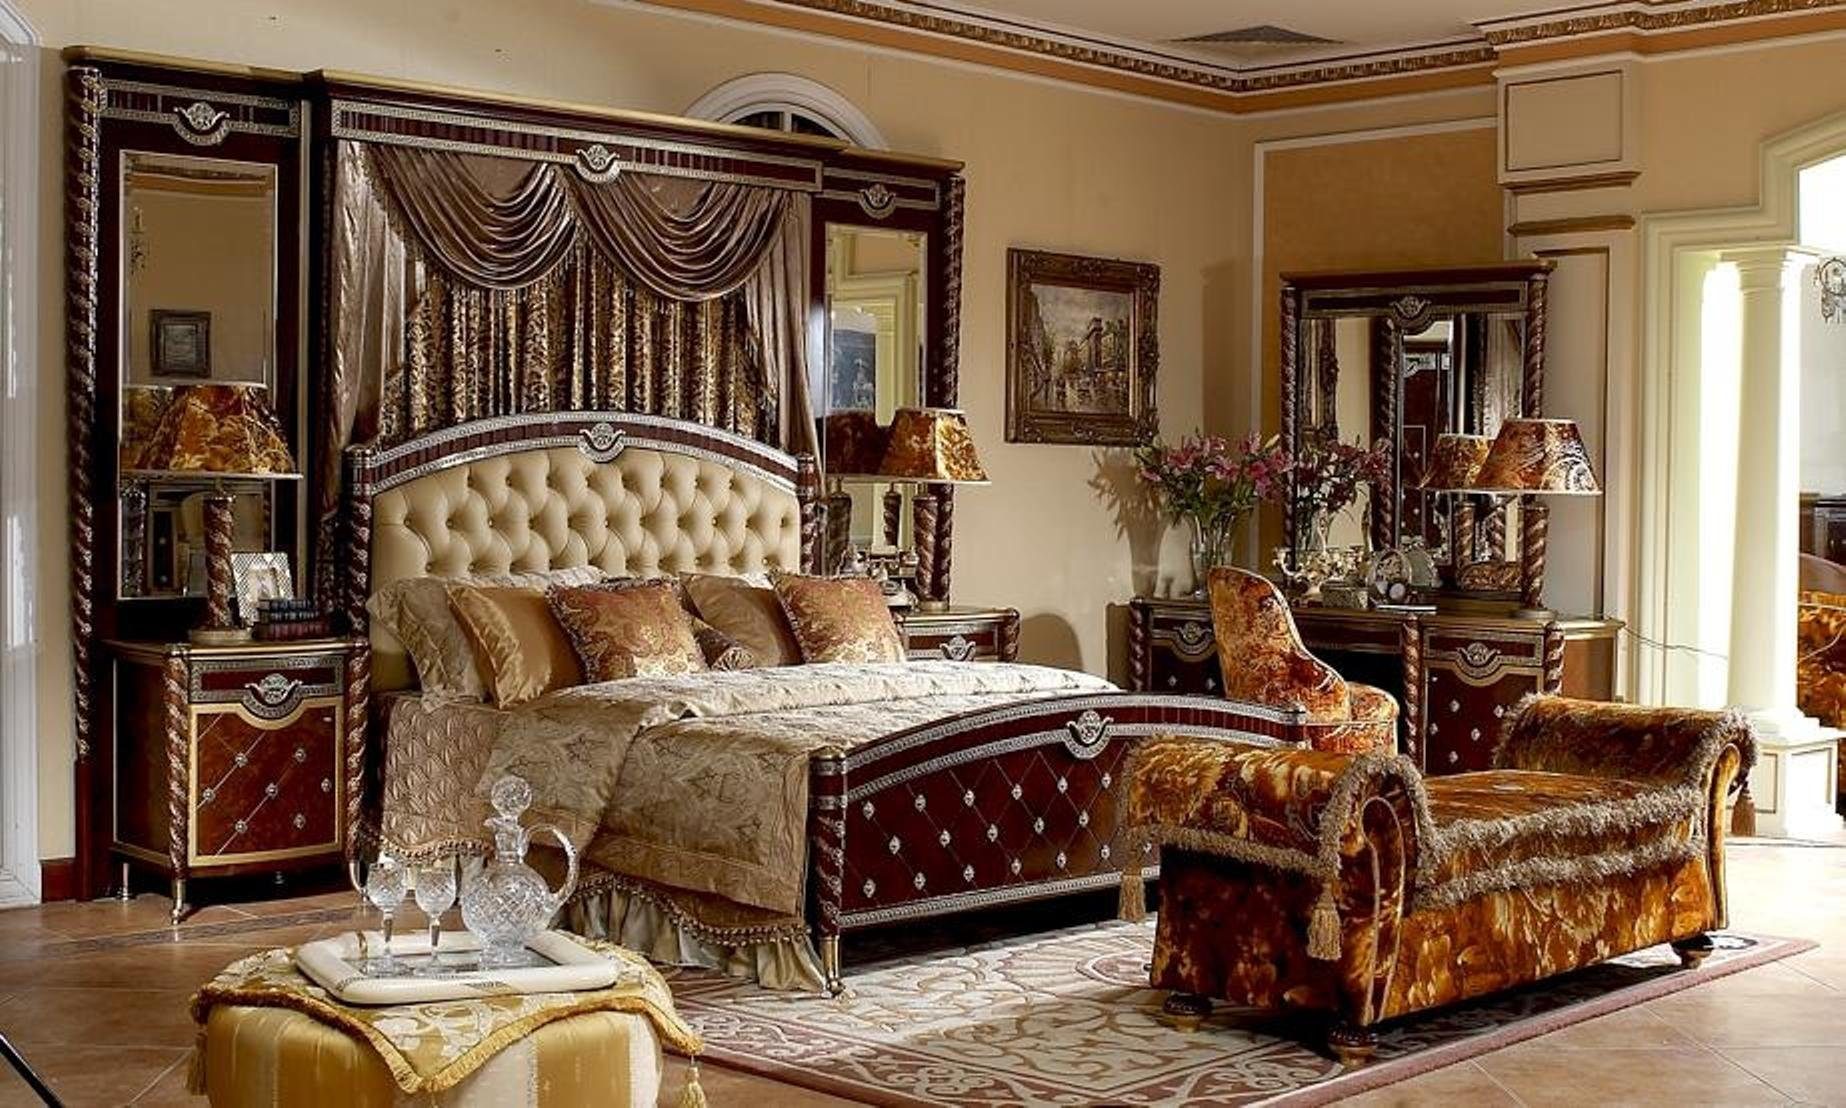 JVmoebel Bett, Antik Stil Bett Betten Barock Rokoko Doppelbett Ehebett Echter